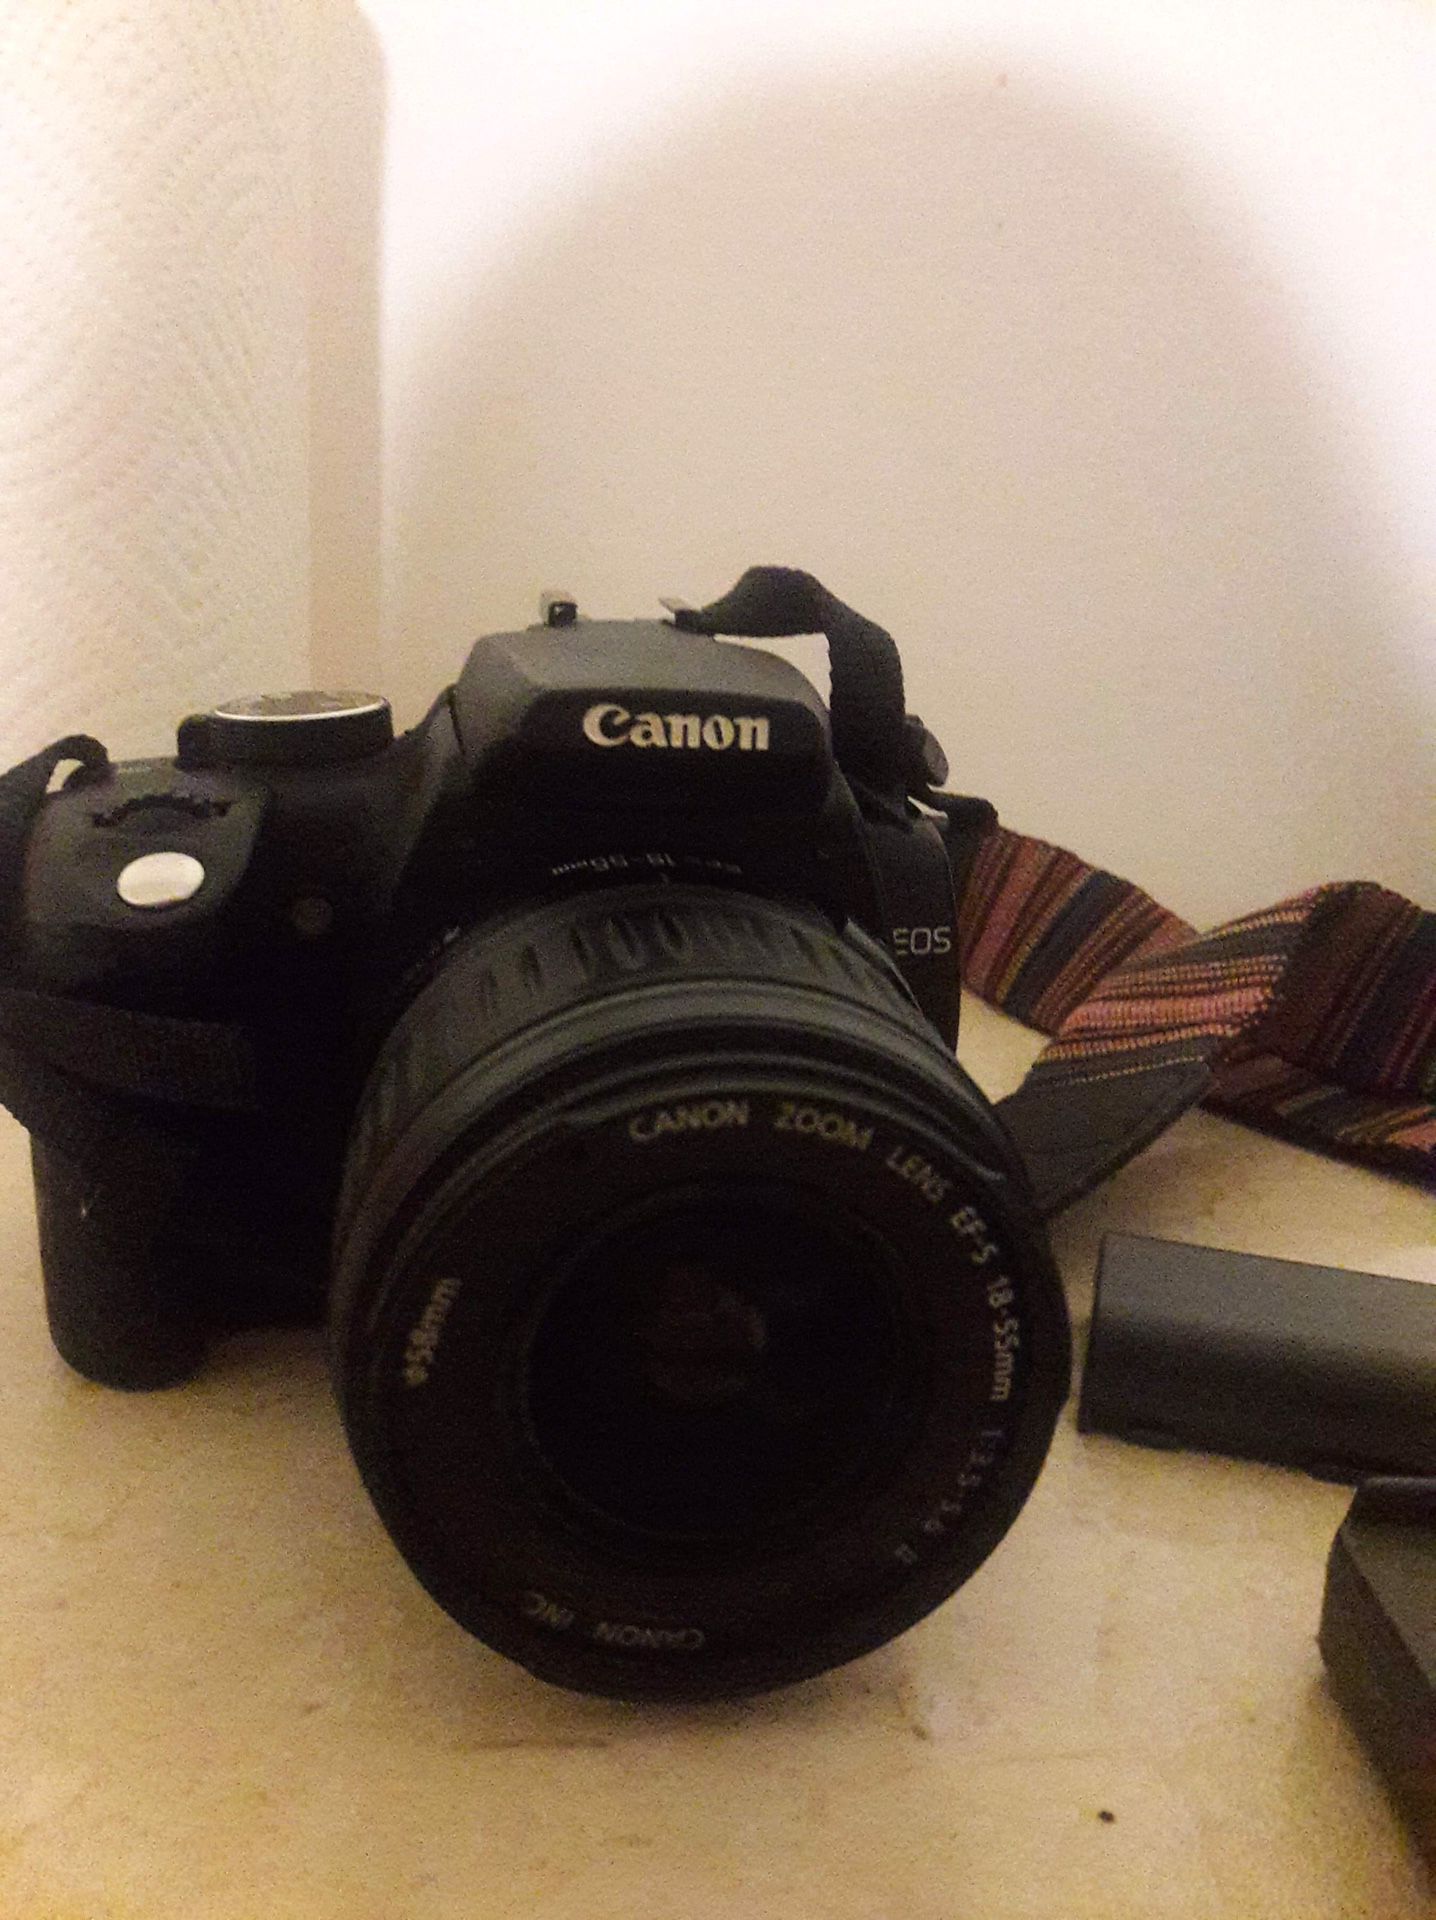 Canon Camera: Eos rebel Xt dslr